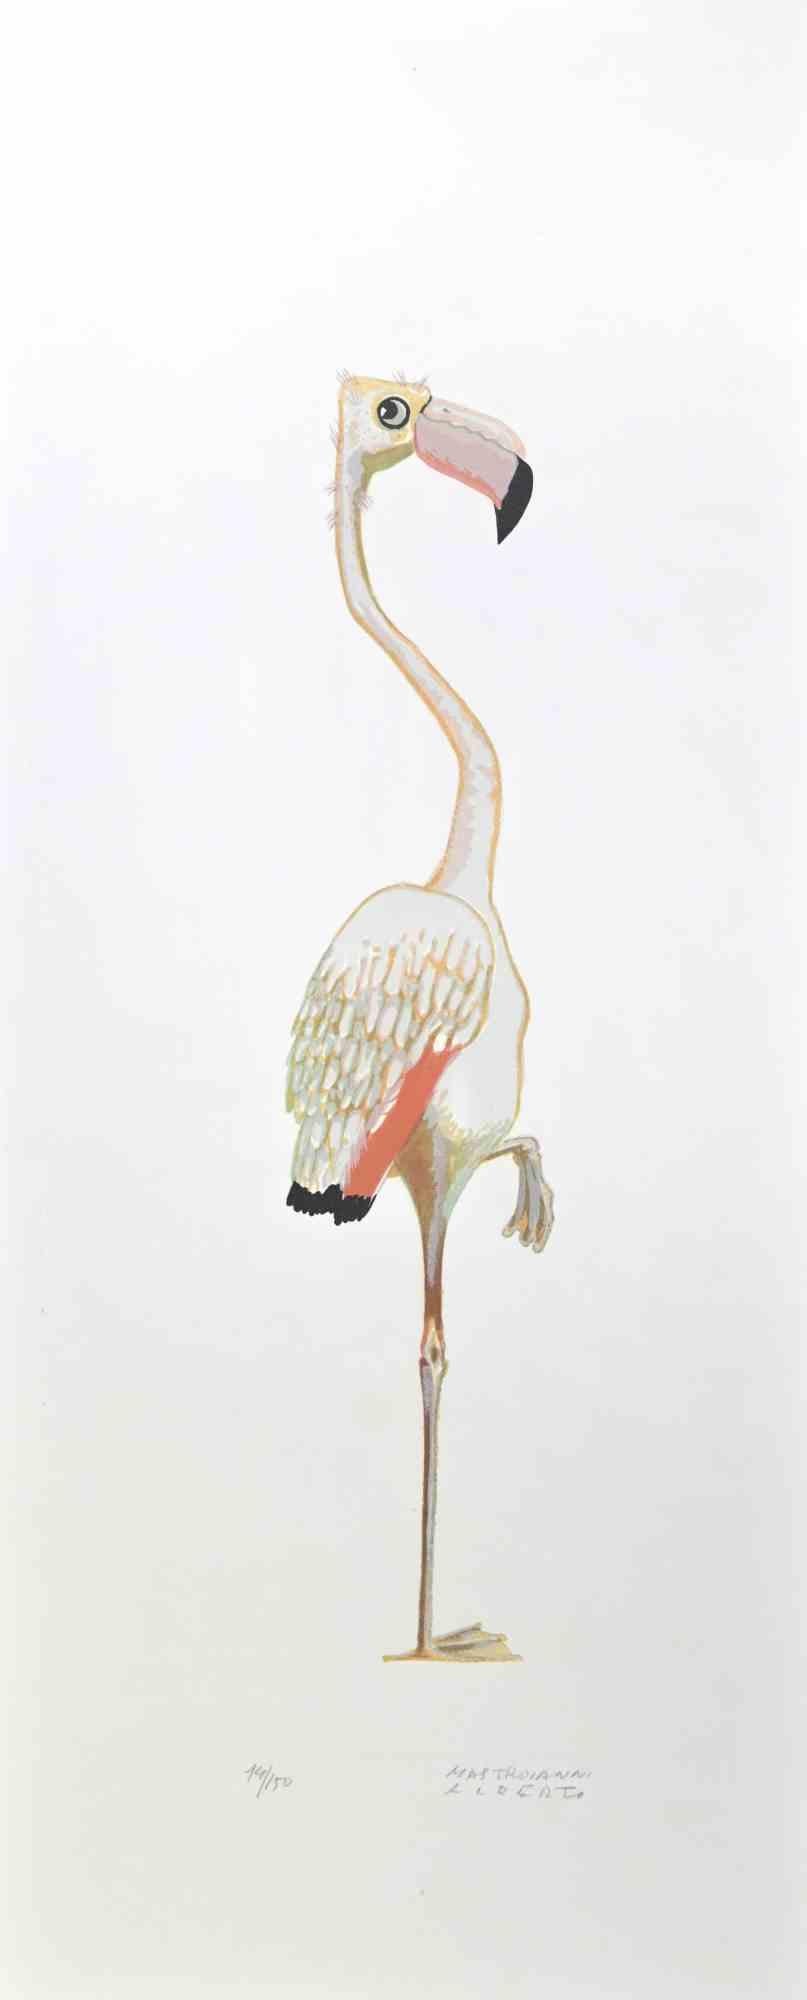 Flamingo est une lithographie réalisée par Alberto Mastroianni dans les années 1970.

Signé à la main dans la marge inférieure droite. Numéroté au crayon dans la partie inférieure. 

L'œuvre d'art représente un flamant rose intéressant, une